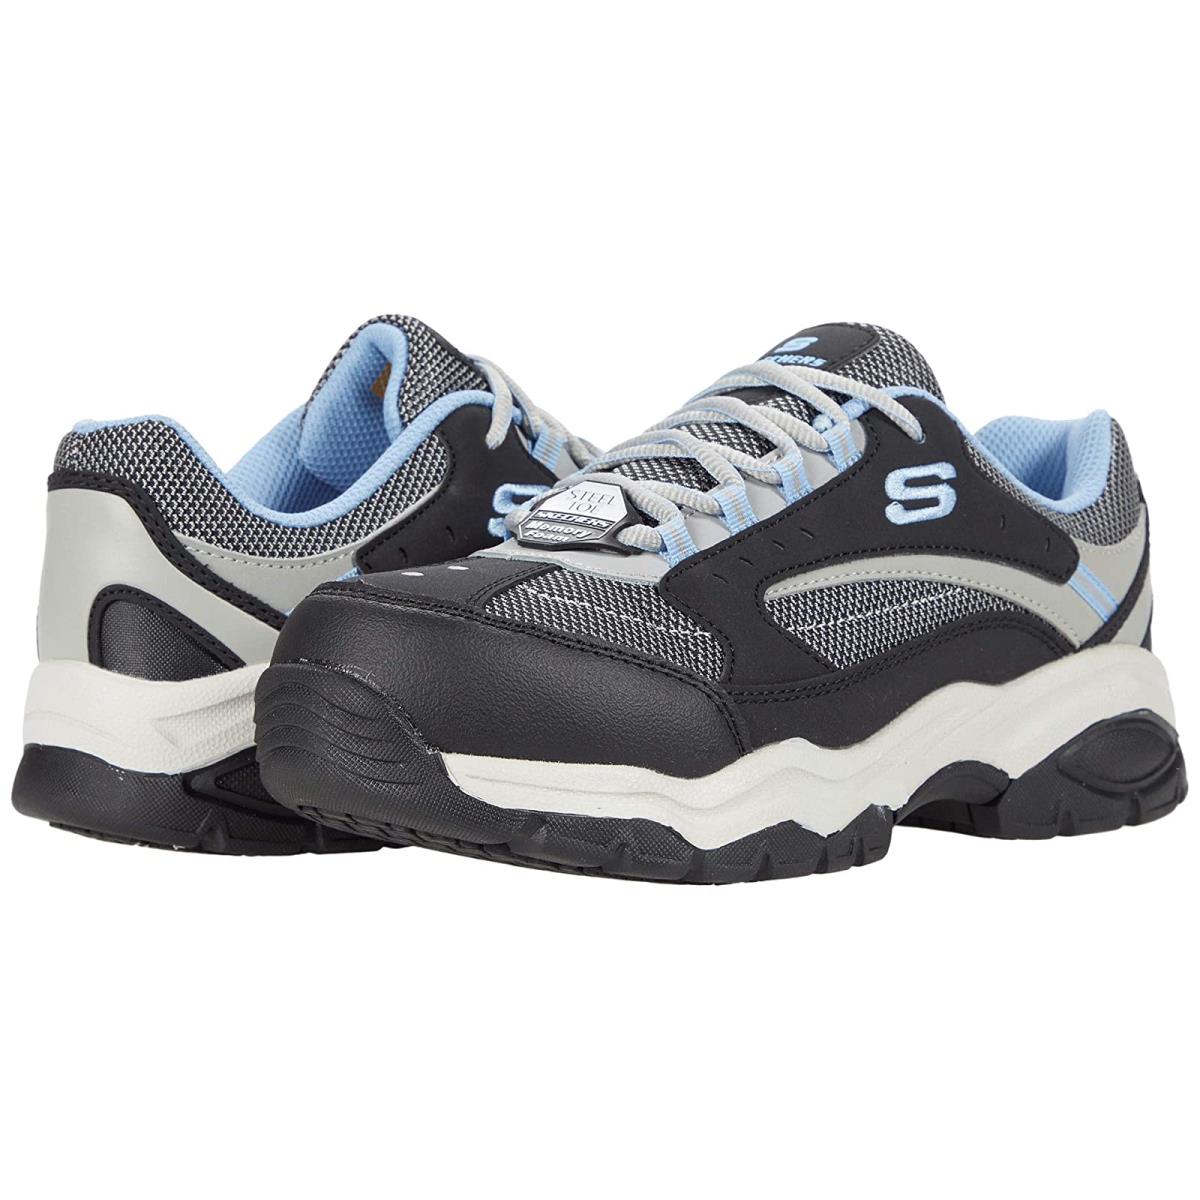 Woman`s Sneakers Athletic Shoes Skechers Work Biscoe Steel Toe Black/Blue